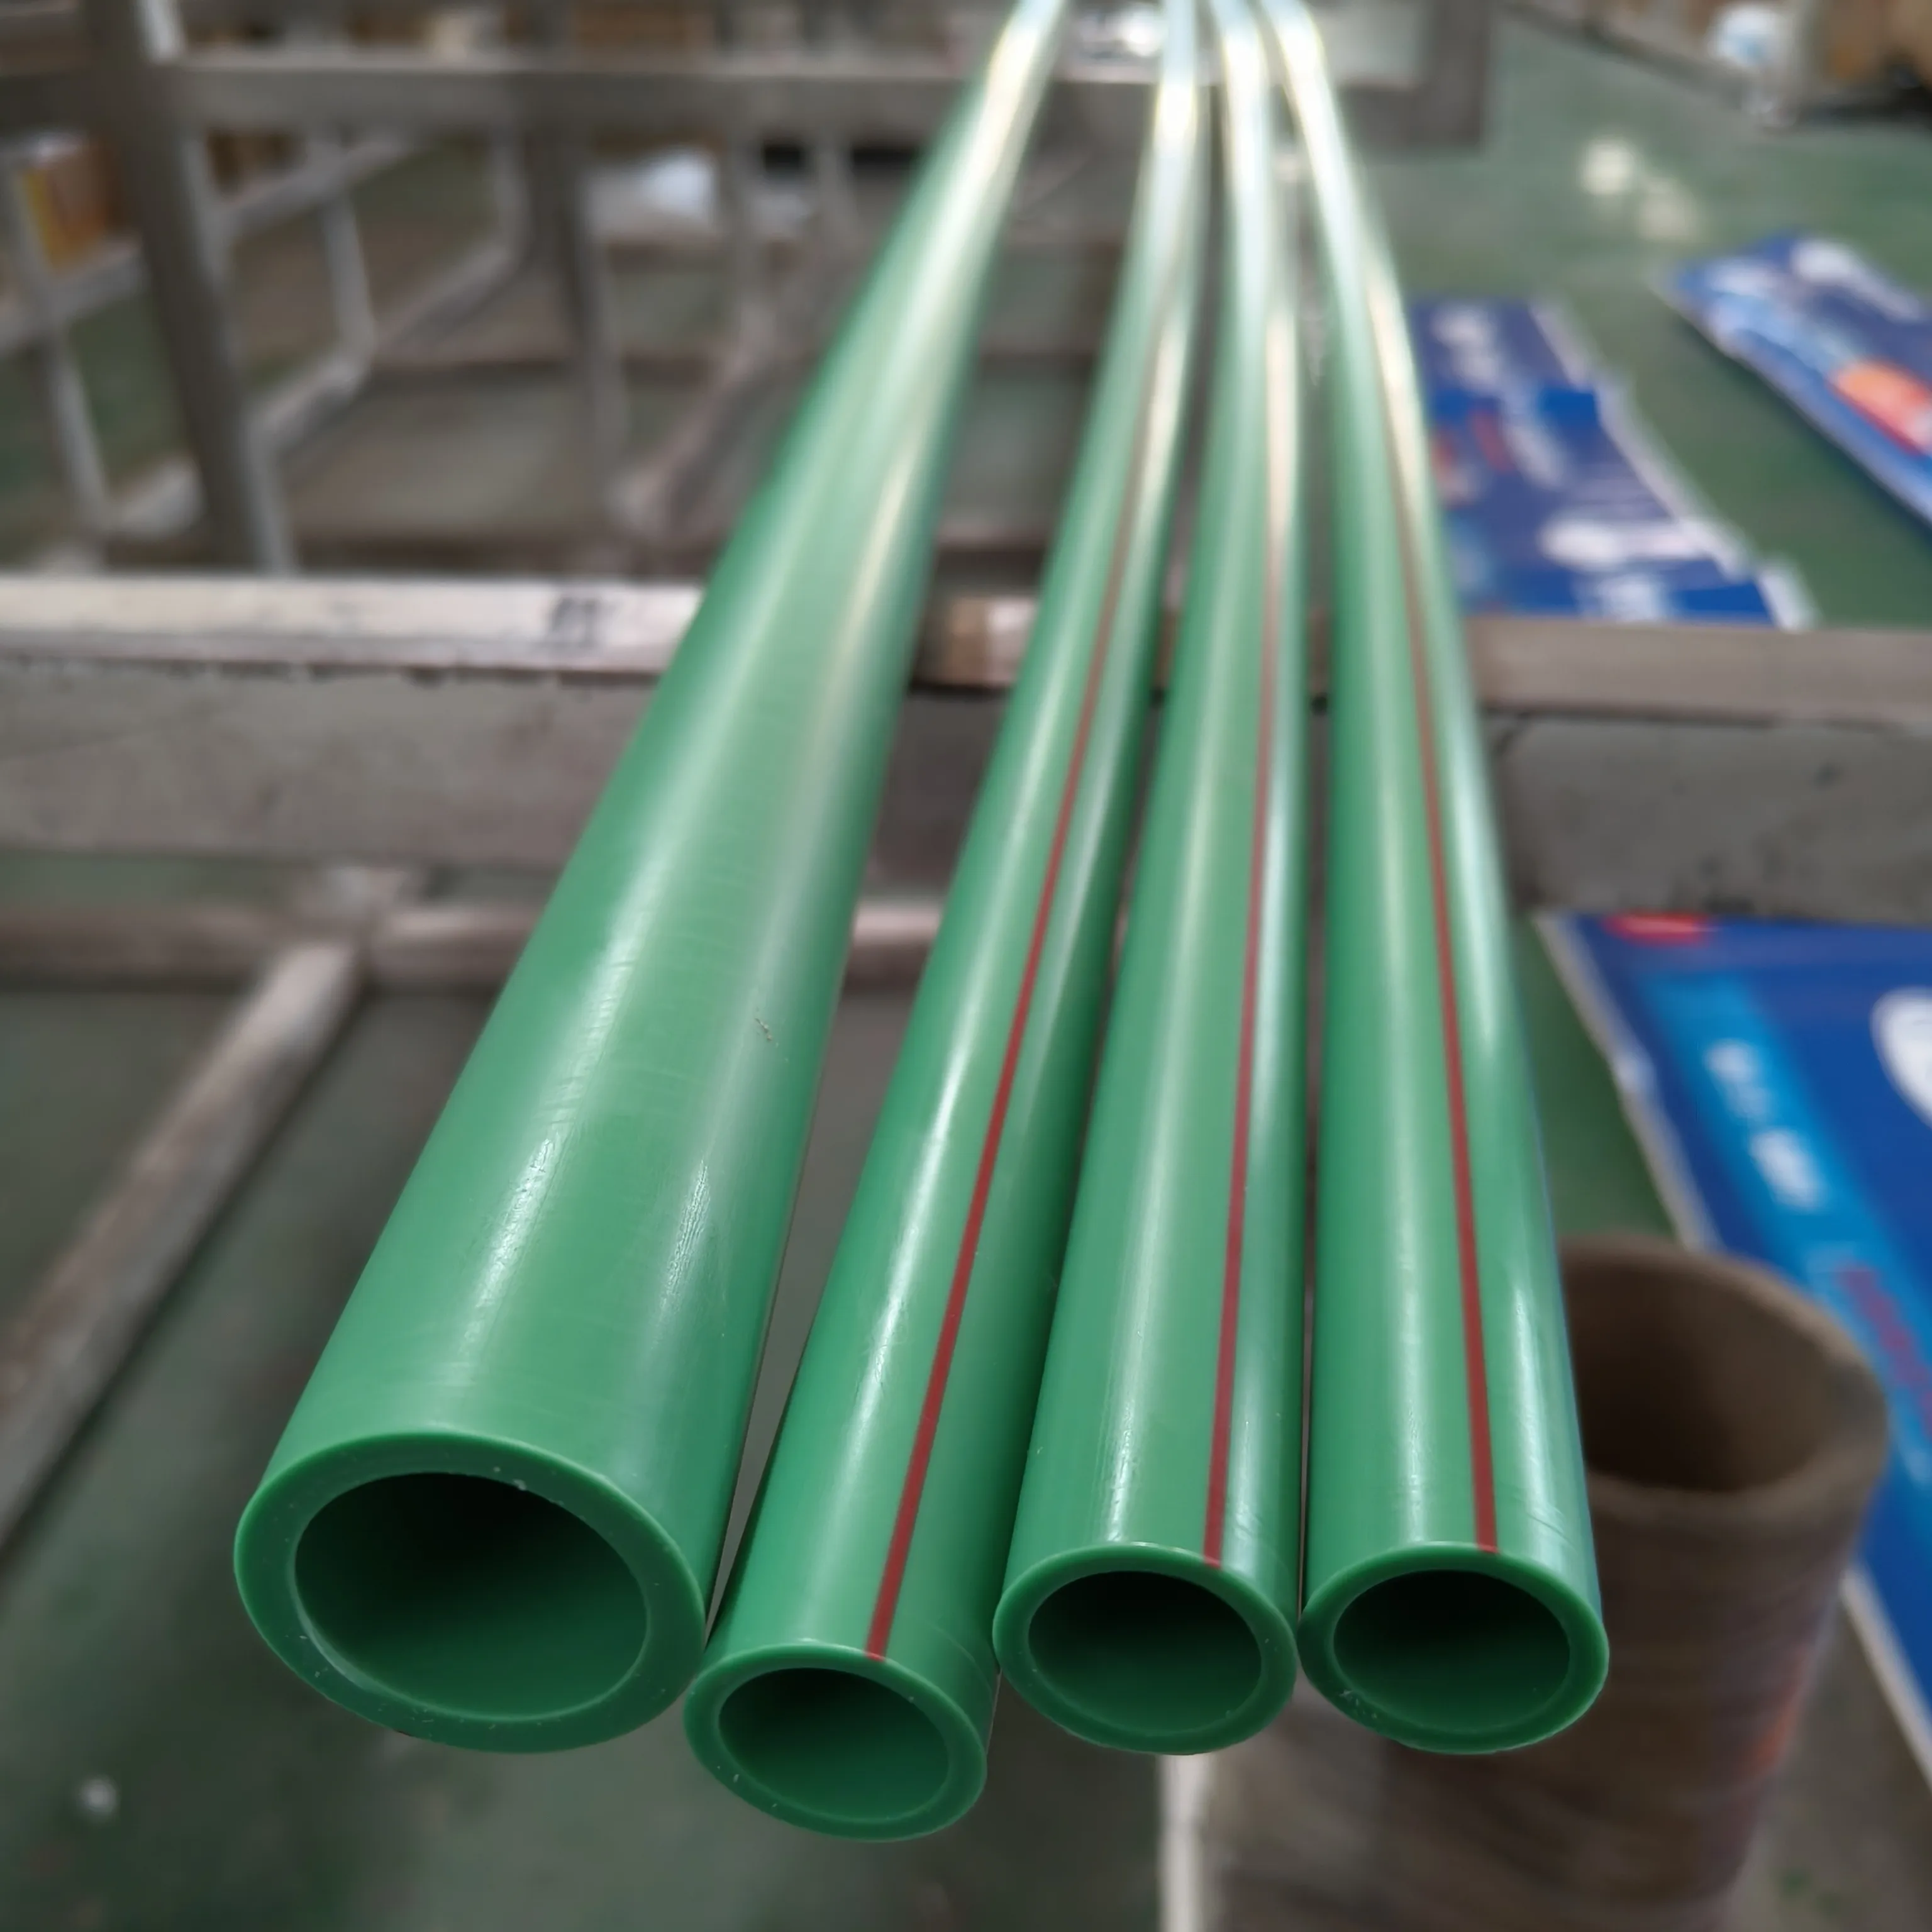 Raccords de tuyauterie en plastique PPR pour tube d'eau chaude tous types-liste de prix et service de traitement de coupe offert